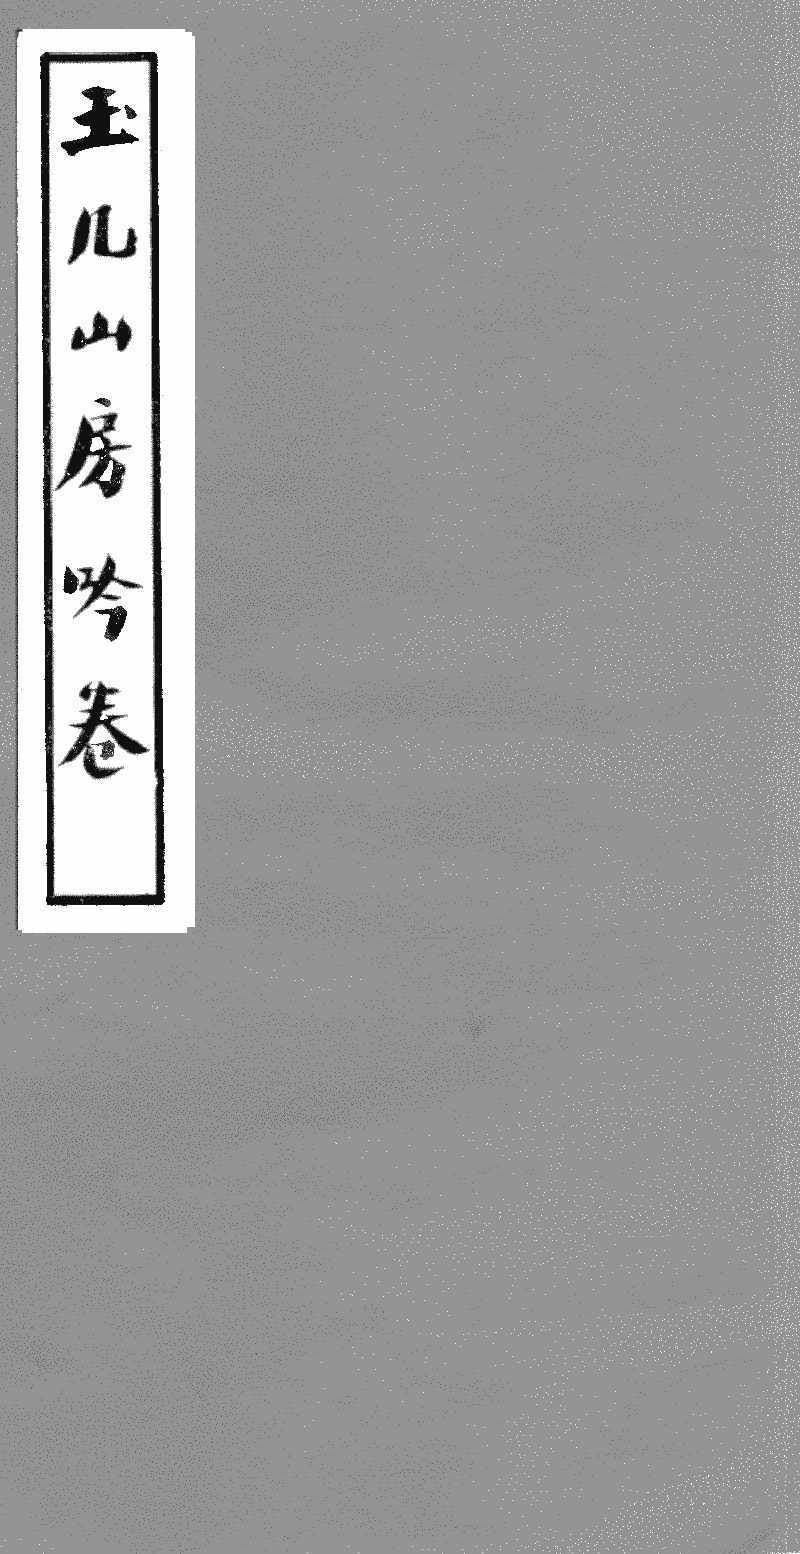 玉几山房吟卷- 中國哲學書電子化計劃